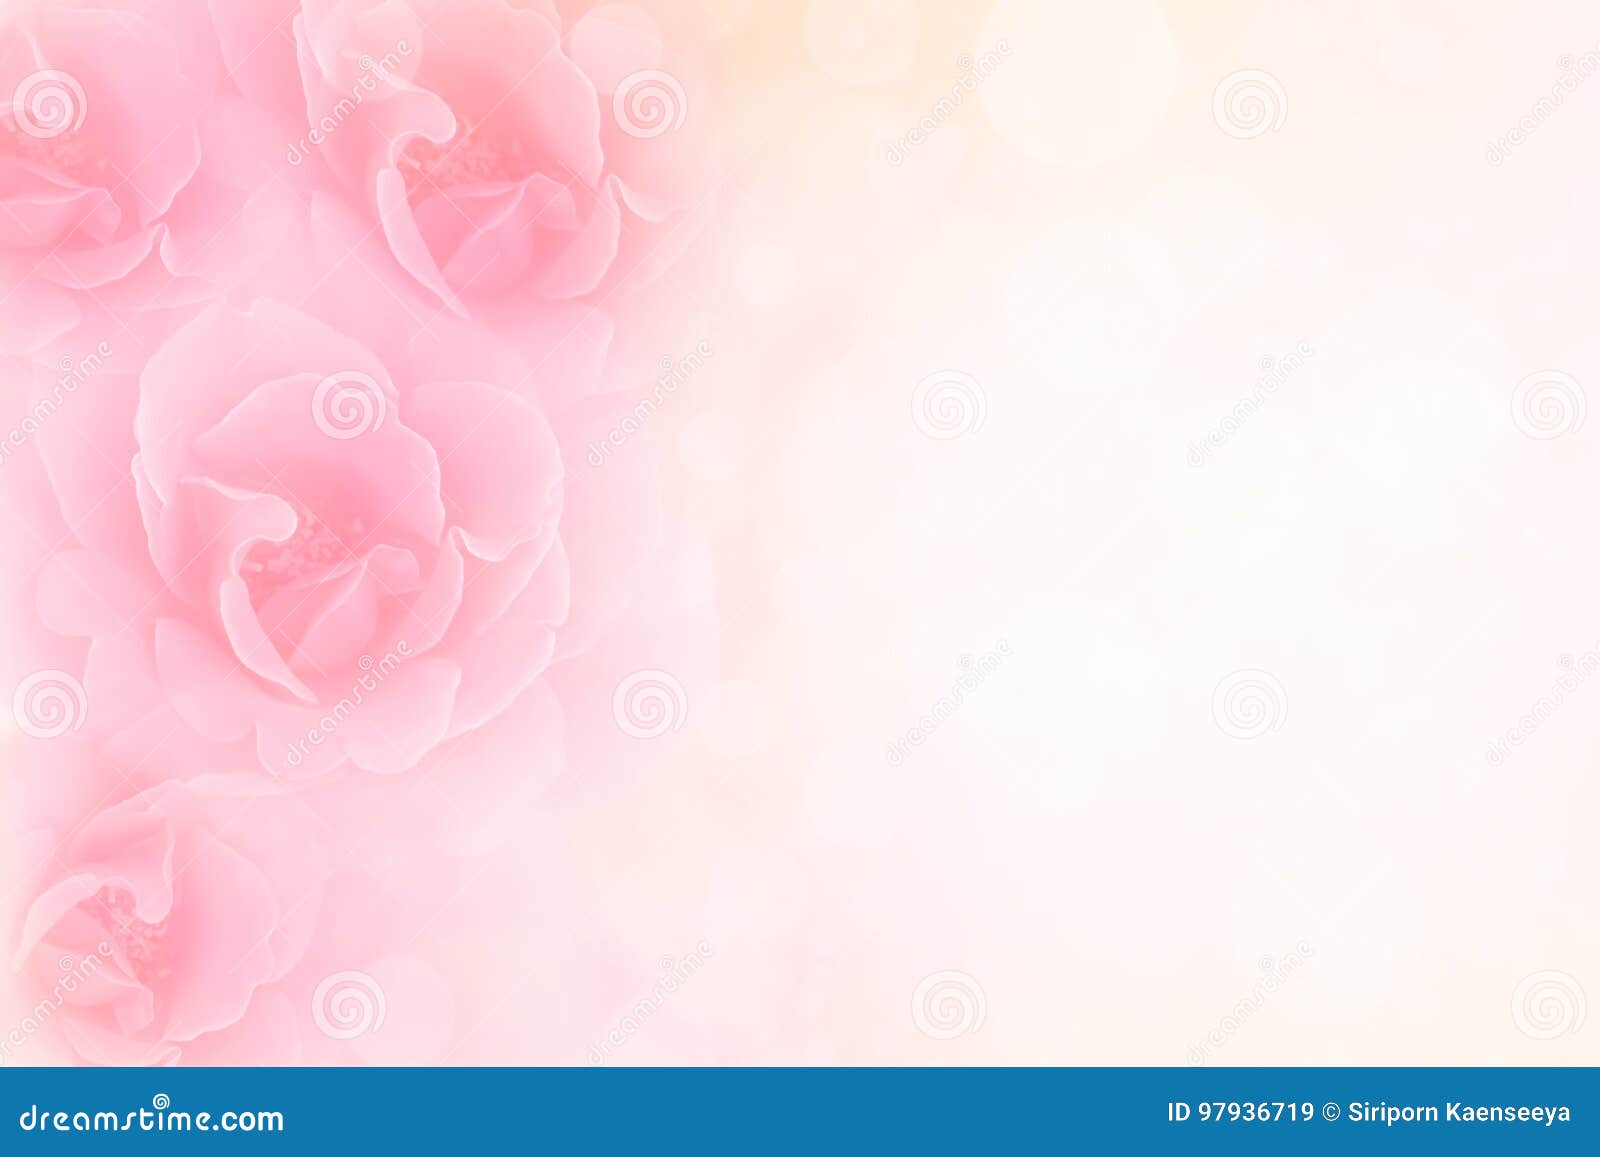 soft pink roses flower vintage border valentine background